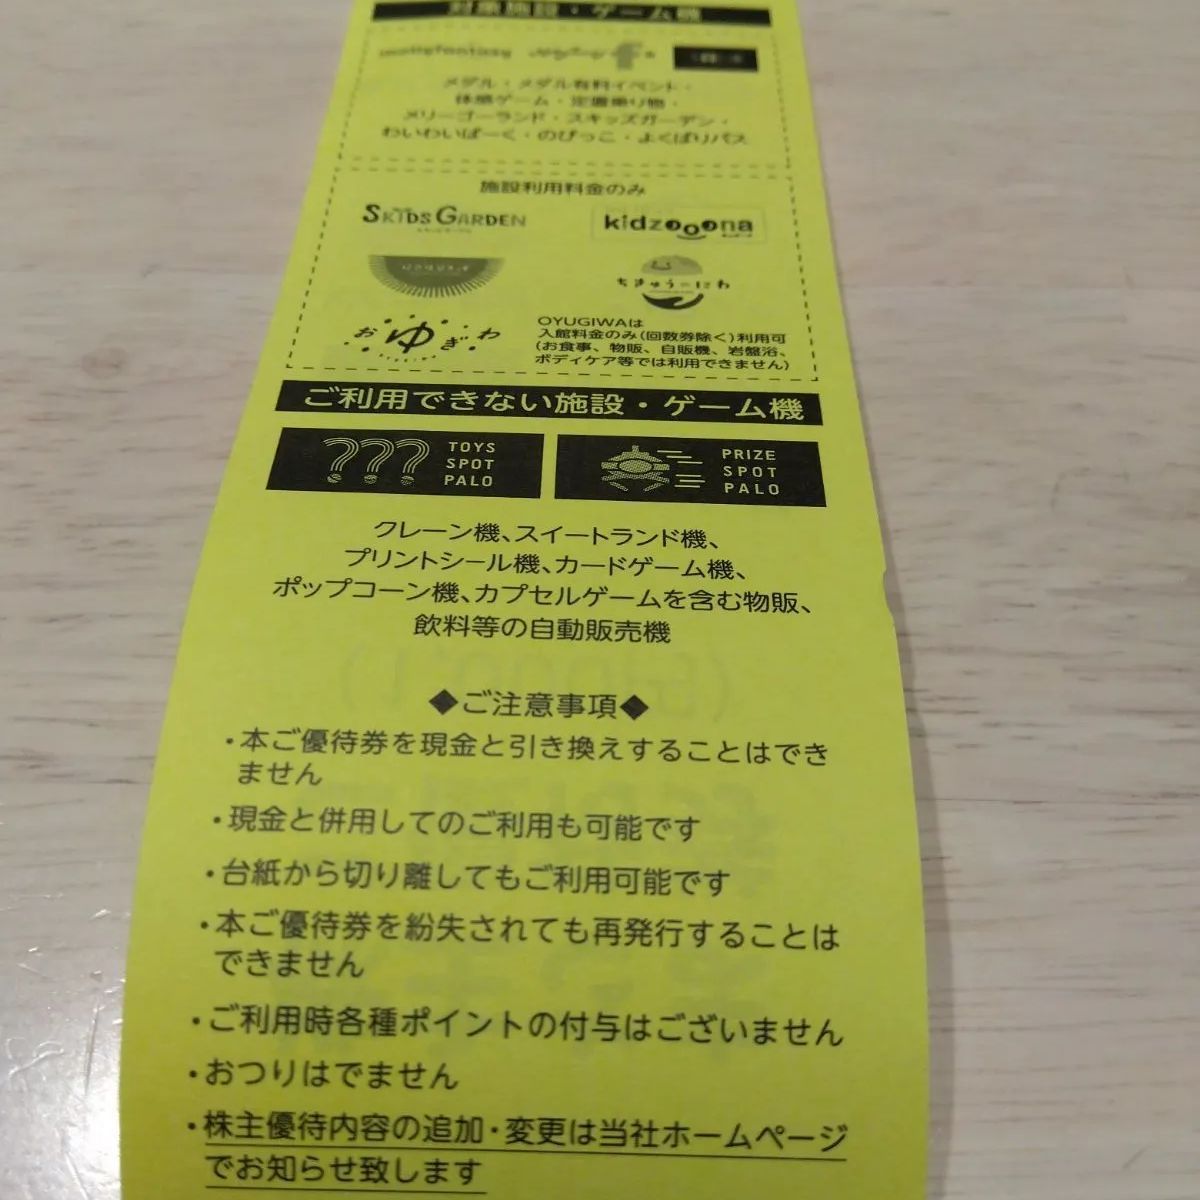 イオンファンタジー 株主優待 10,000円分 100円券×10枚 10冊セット